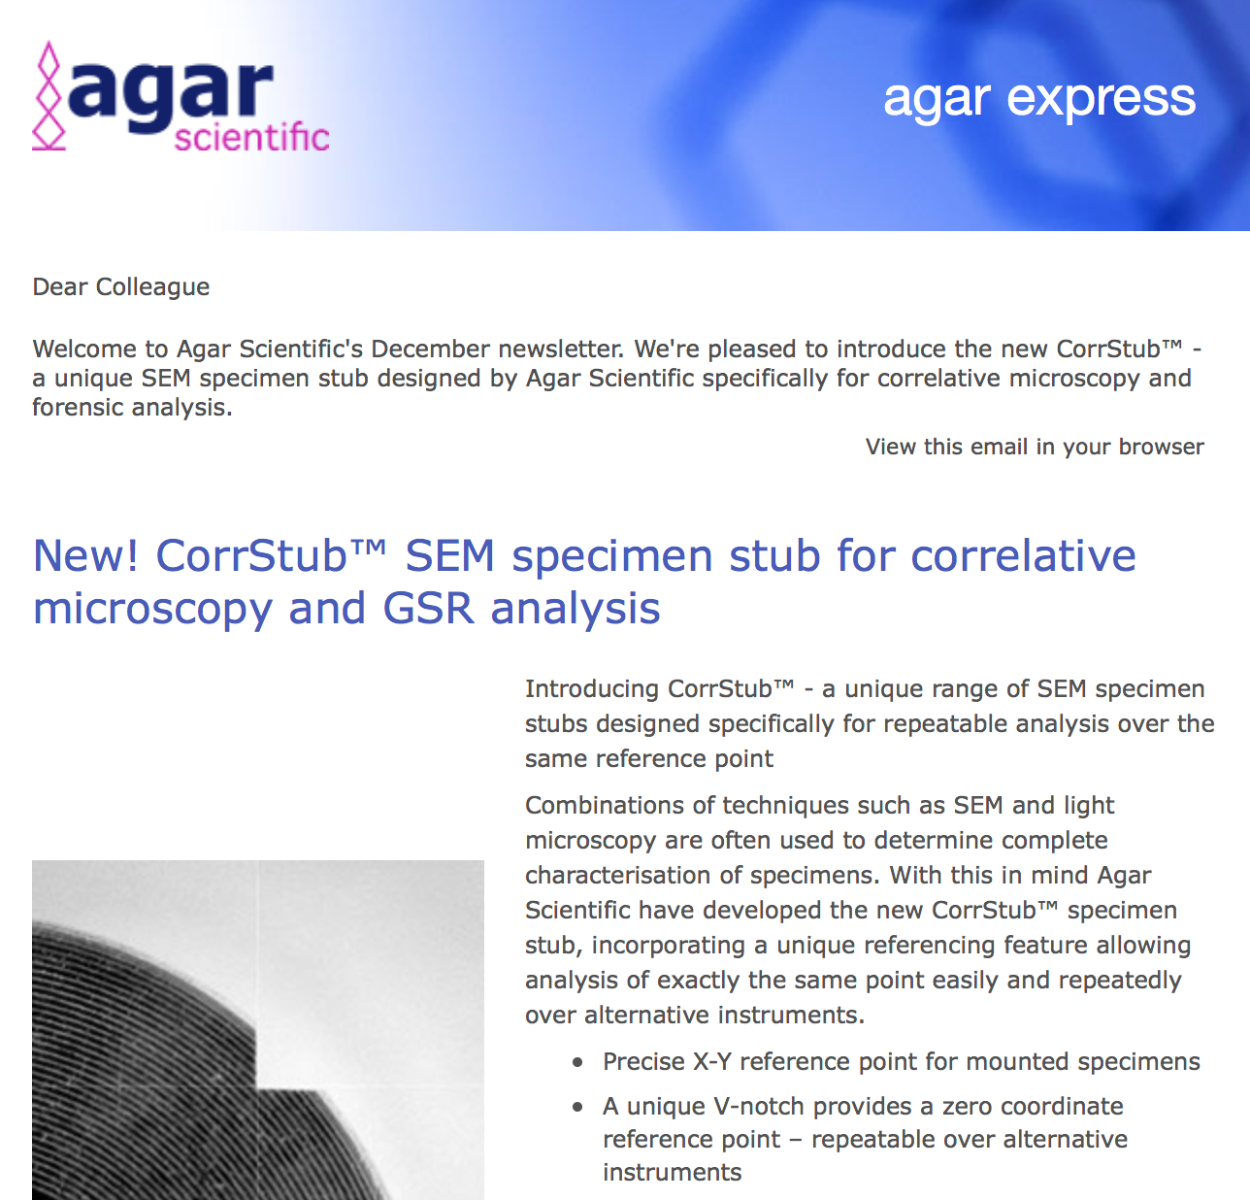 Agar Express December 2017 - introducing our new CorrStub® a unique SEM specimen stub for correlative microscopy & more...